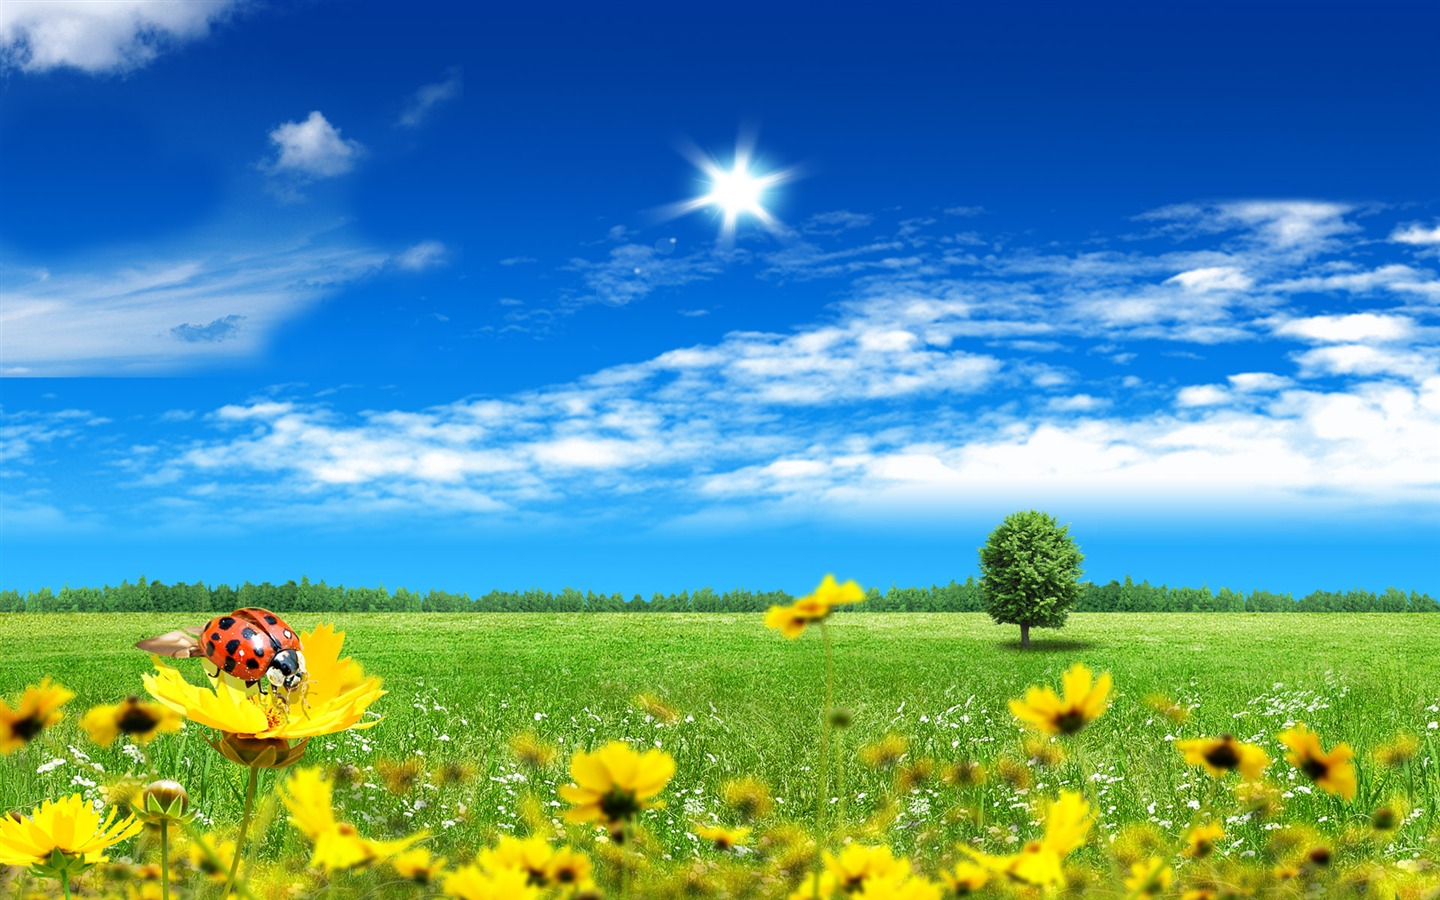 Photoshopの日当たりの良い夏の風景の壁紙 (2) #8 - 1440x900